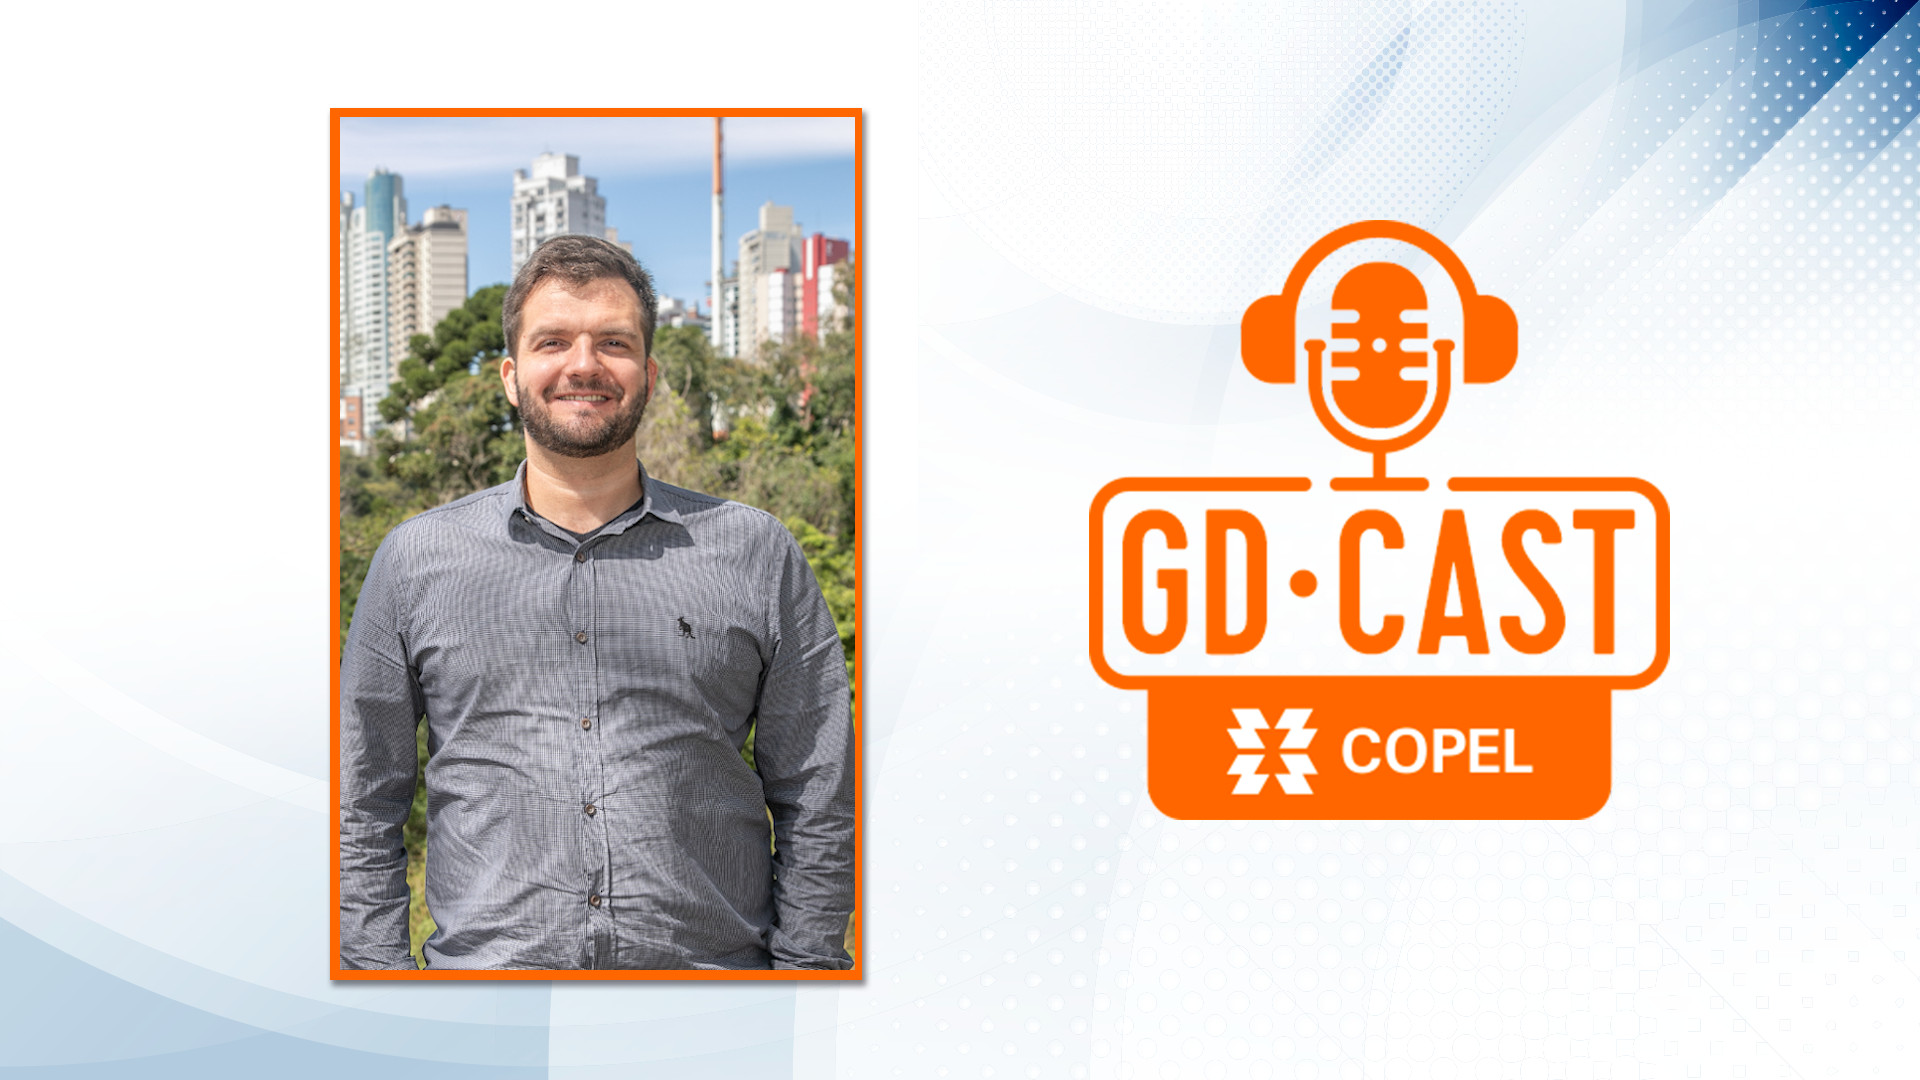 Foto de um homem branco, sorridente, de camisa cinza, em local aberto. Do lado direito, a logomarca do podcast.